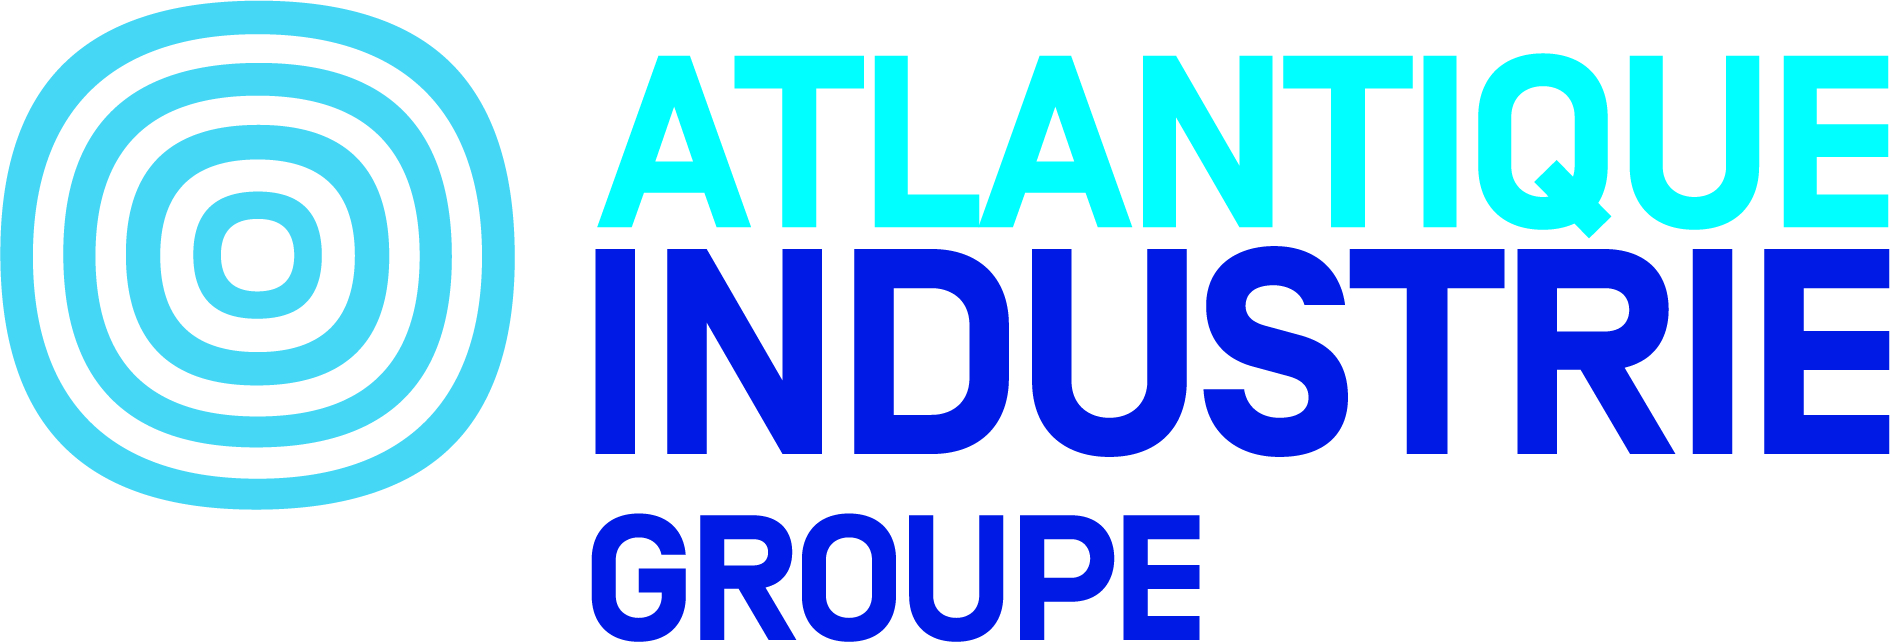 Logo : Atlantique industrie